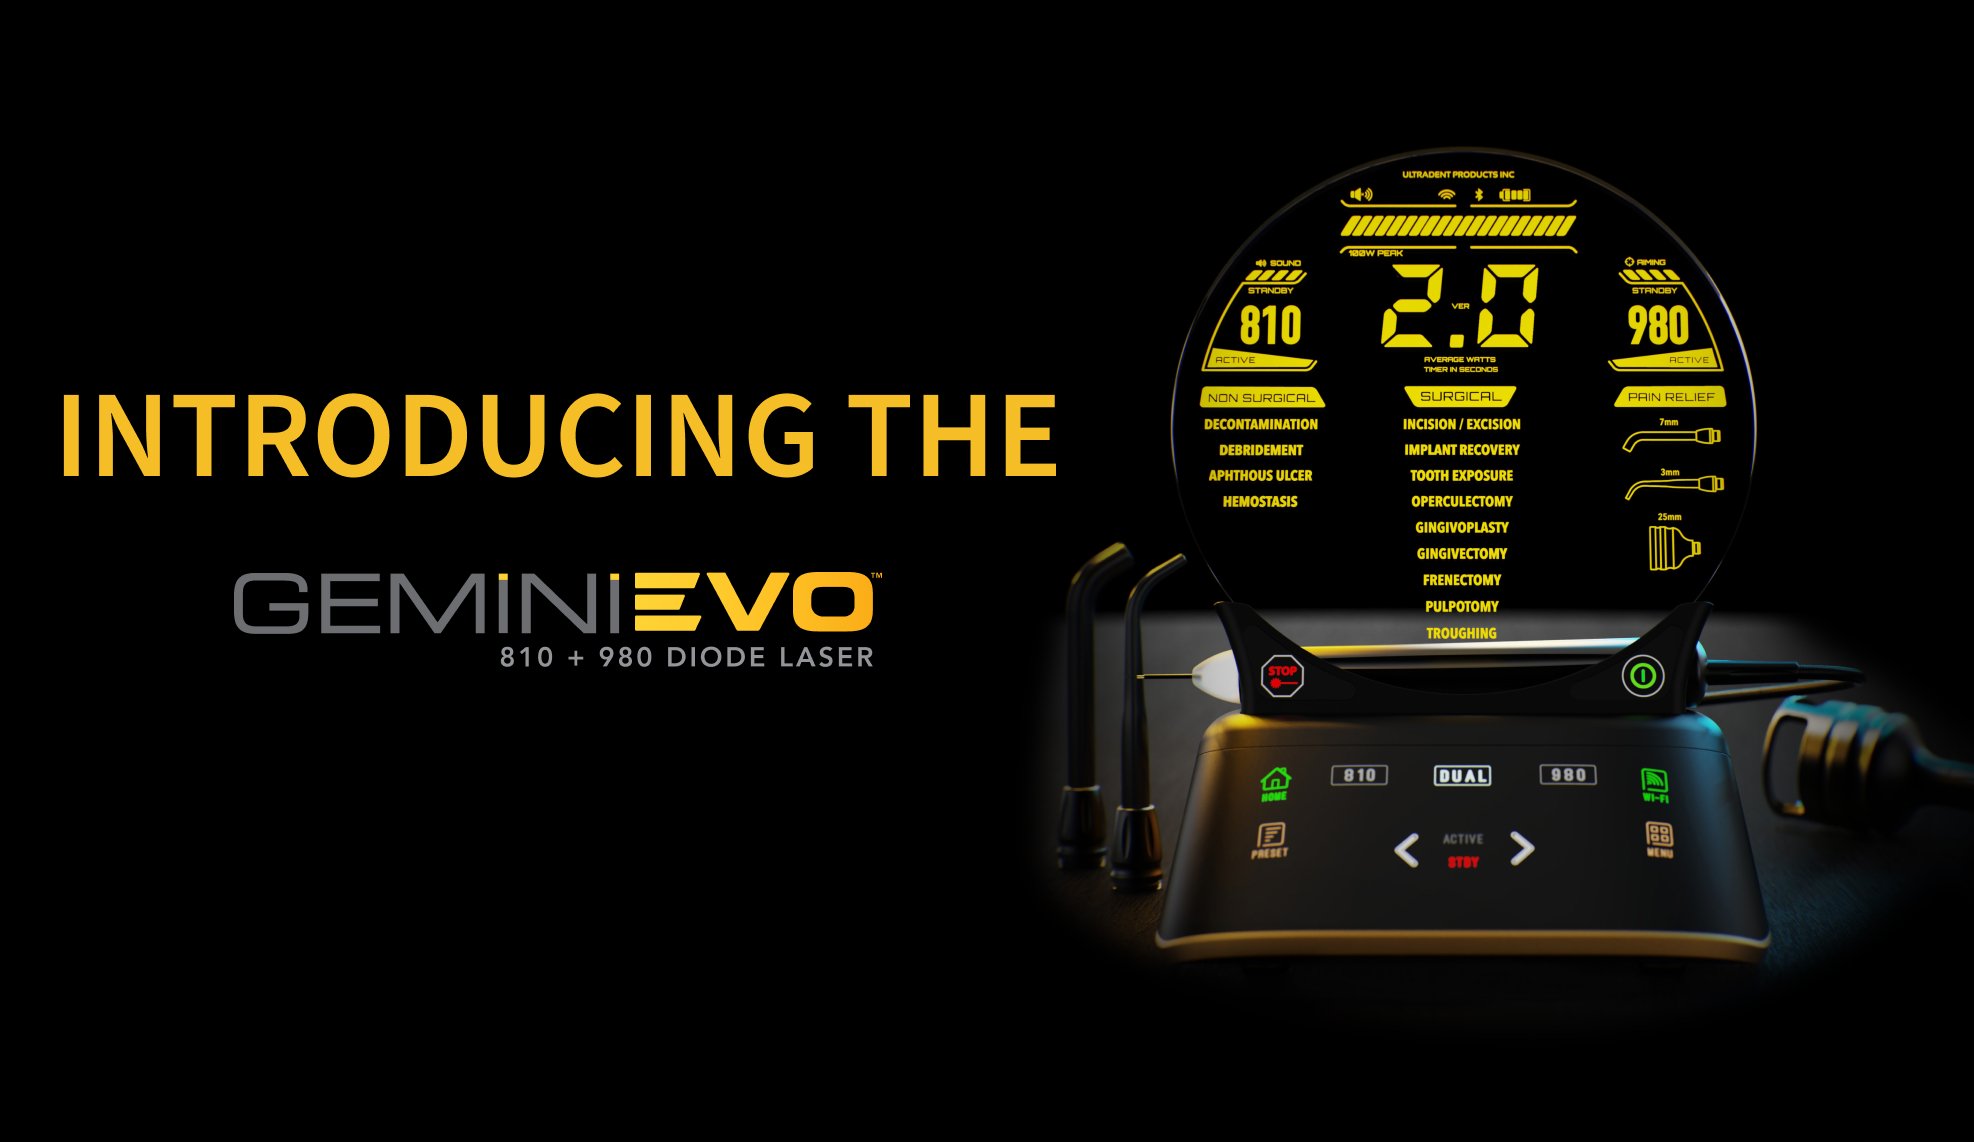 De Gemini EVO™-diodelaser zorgt voor een heel nieuwe beleving binnen de lasertandheelkunde